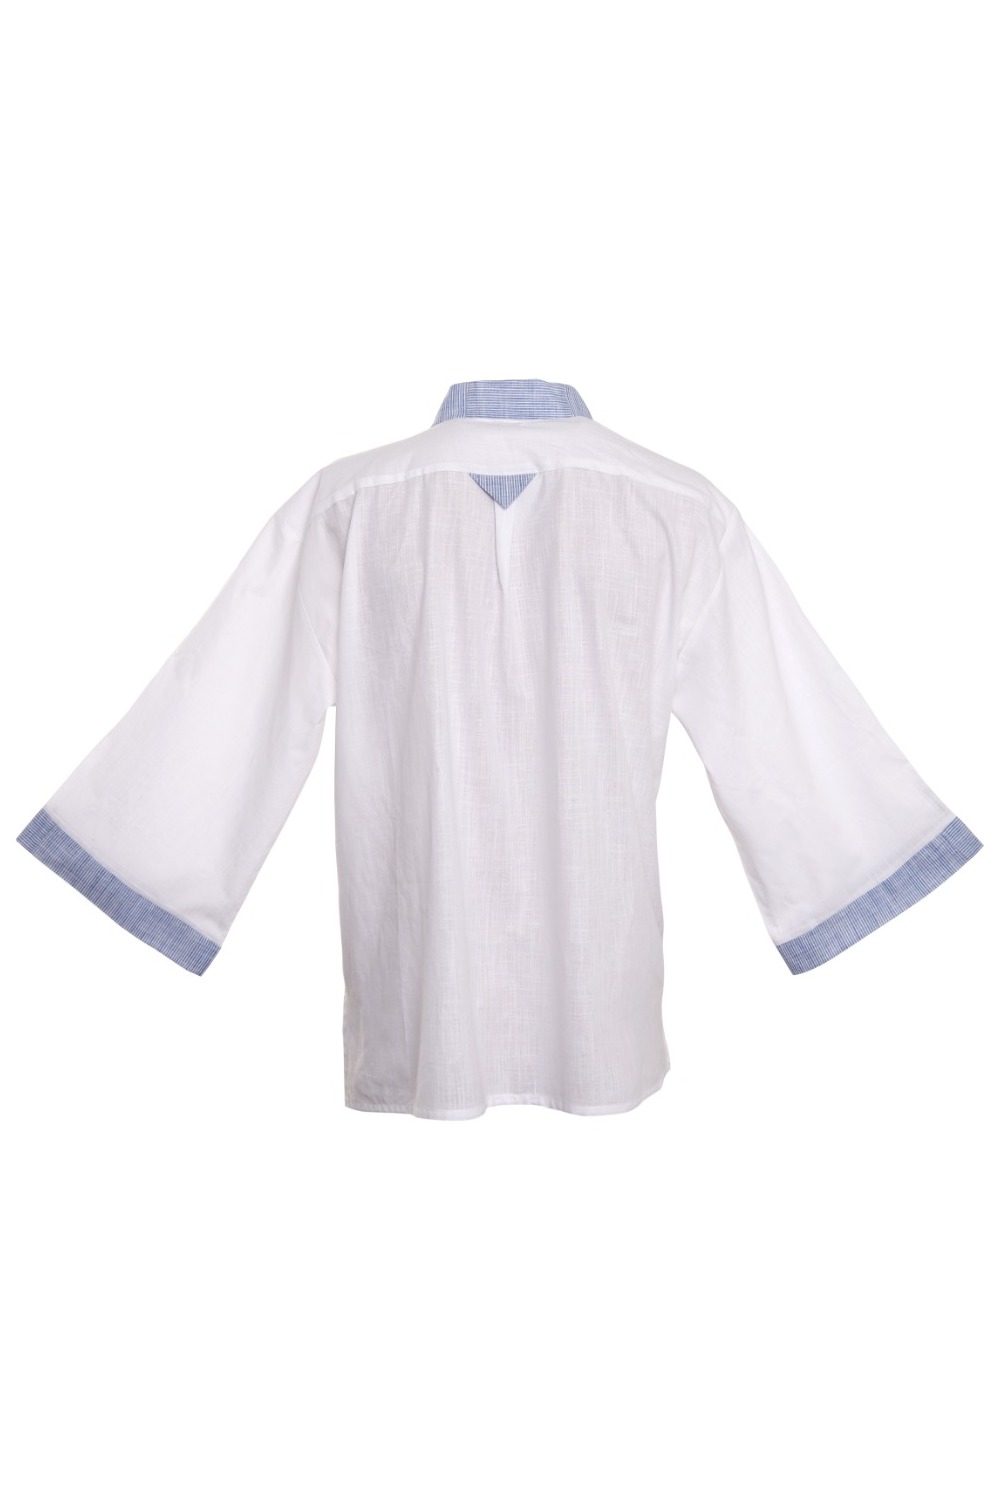 Culebra Kimono Shirt